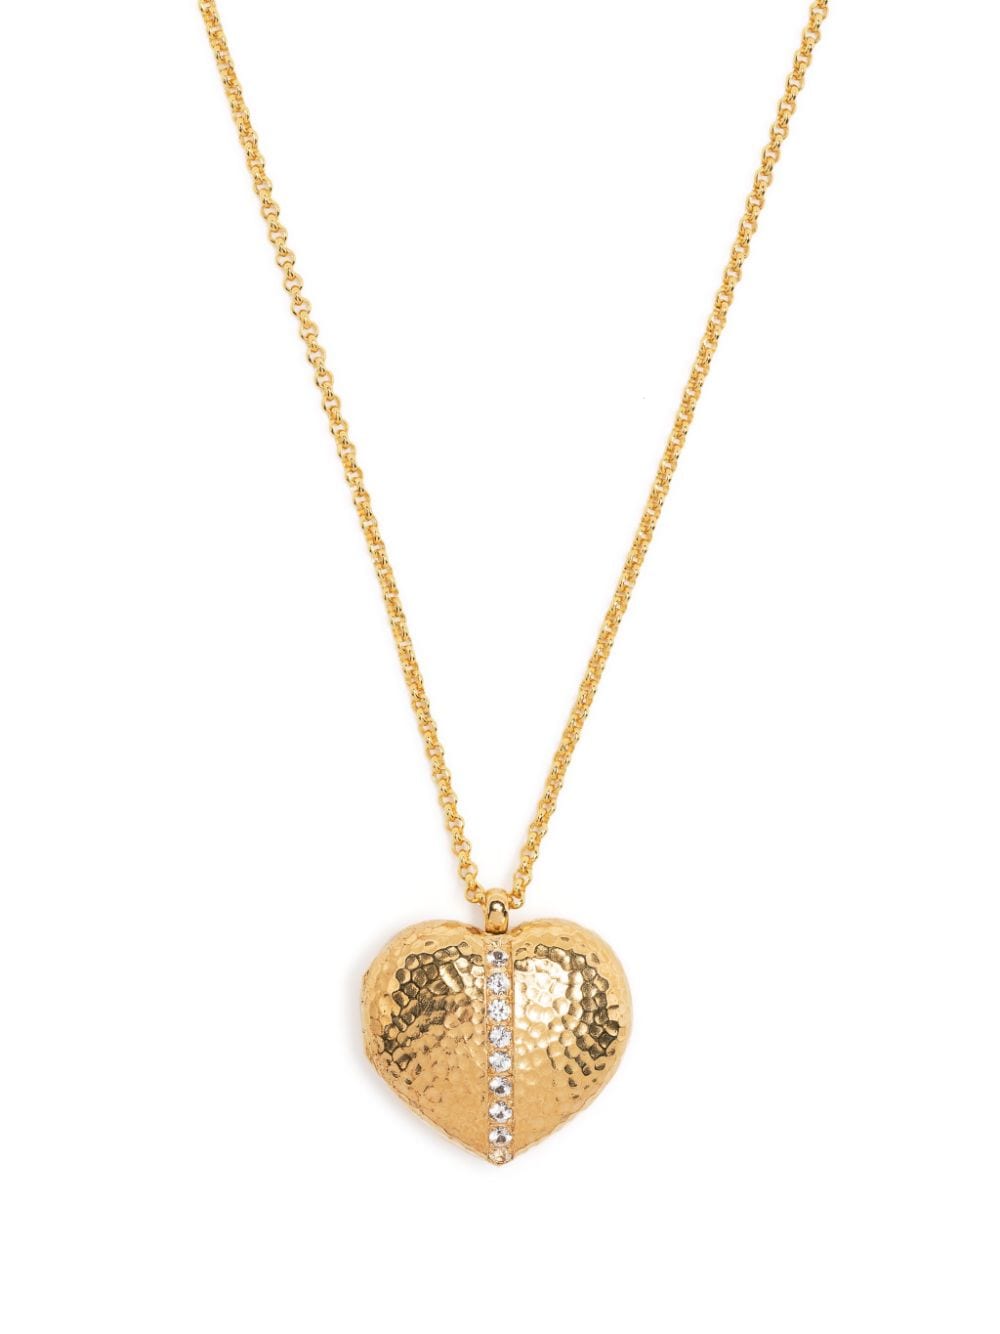 Heart Lumiere pendant necklace